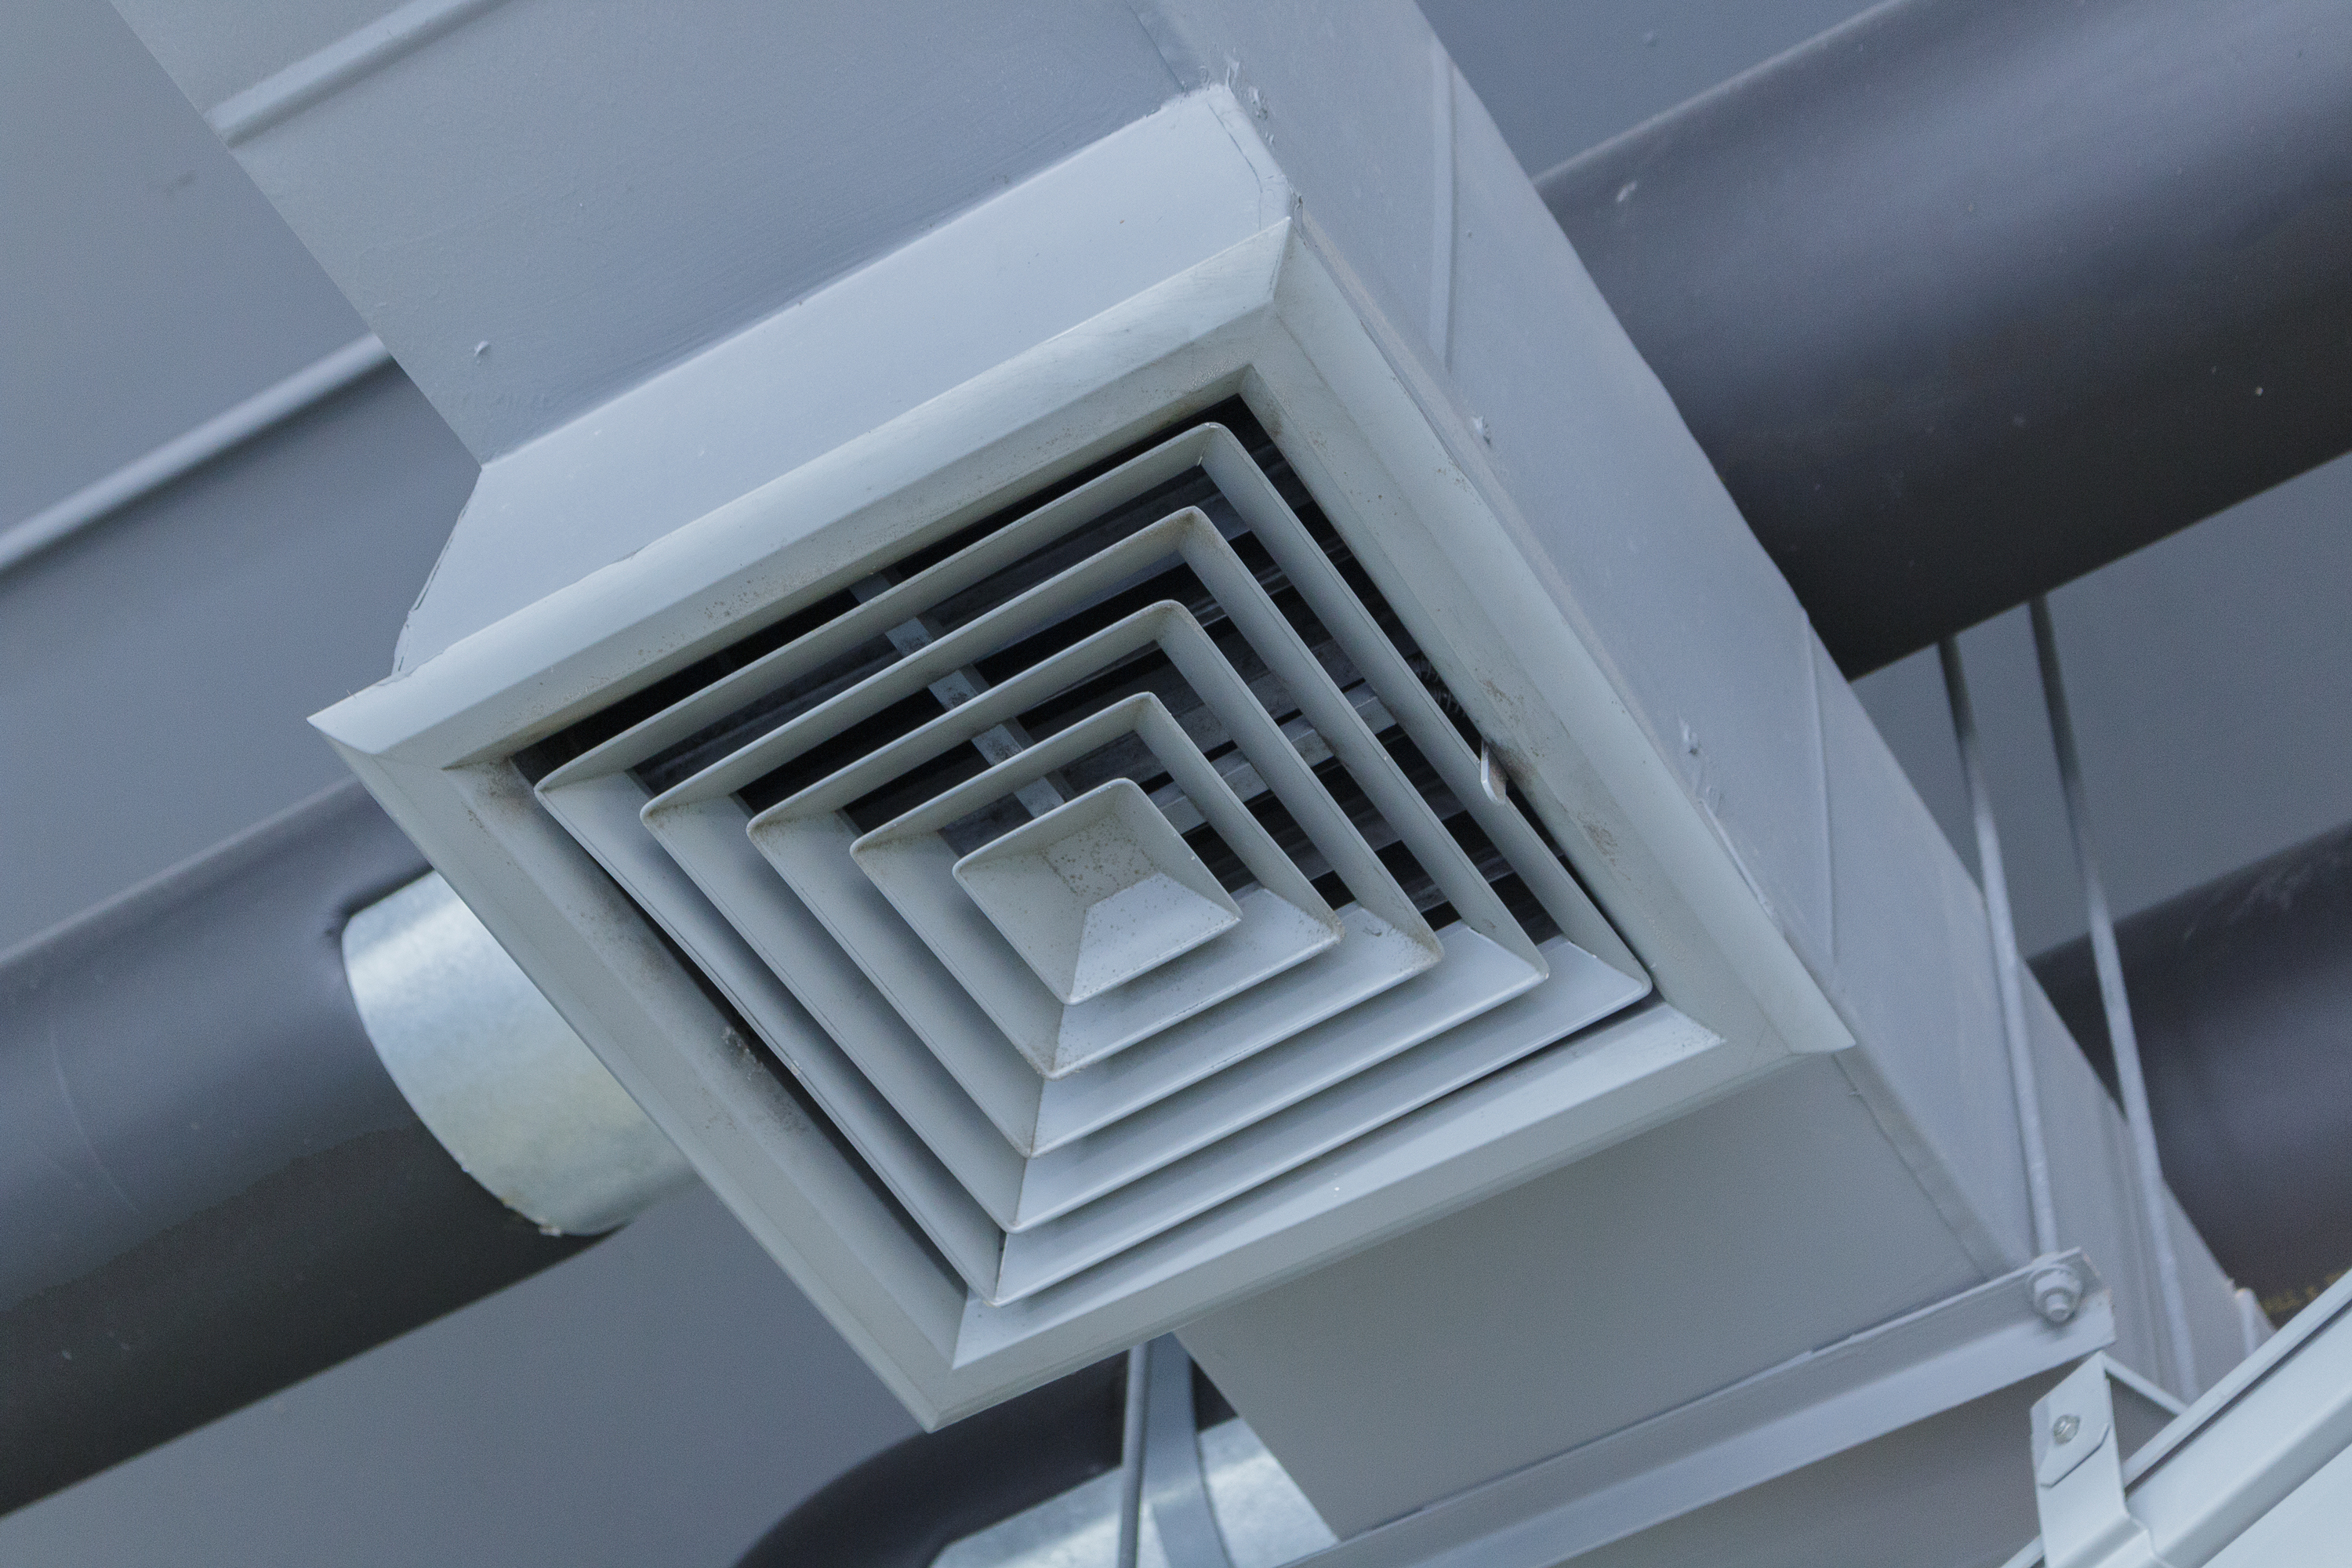 Сайт вентиляционных. Система вентиляции Air Ventilation. Вытяжка воздуховод nv150. Воздухоприемные решетки приточно-вытяжная вентиляция. Решетка канальная воздухозаборная.